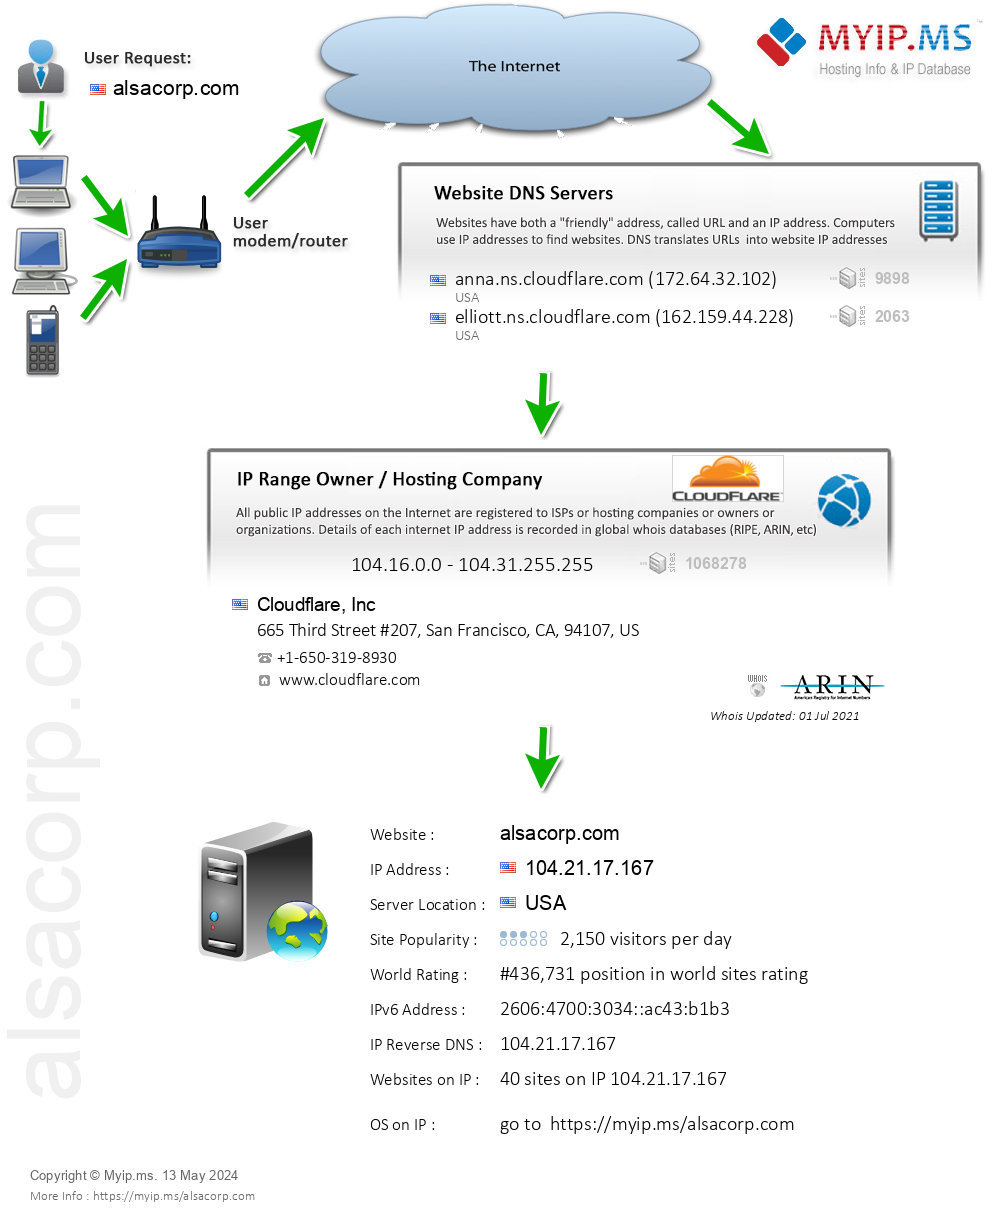 Alsacorp.com - Website Hosting Visual IP Diagram